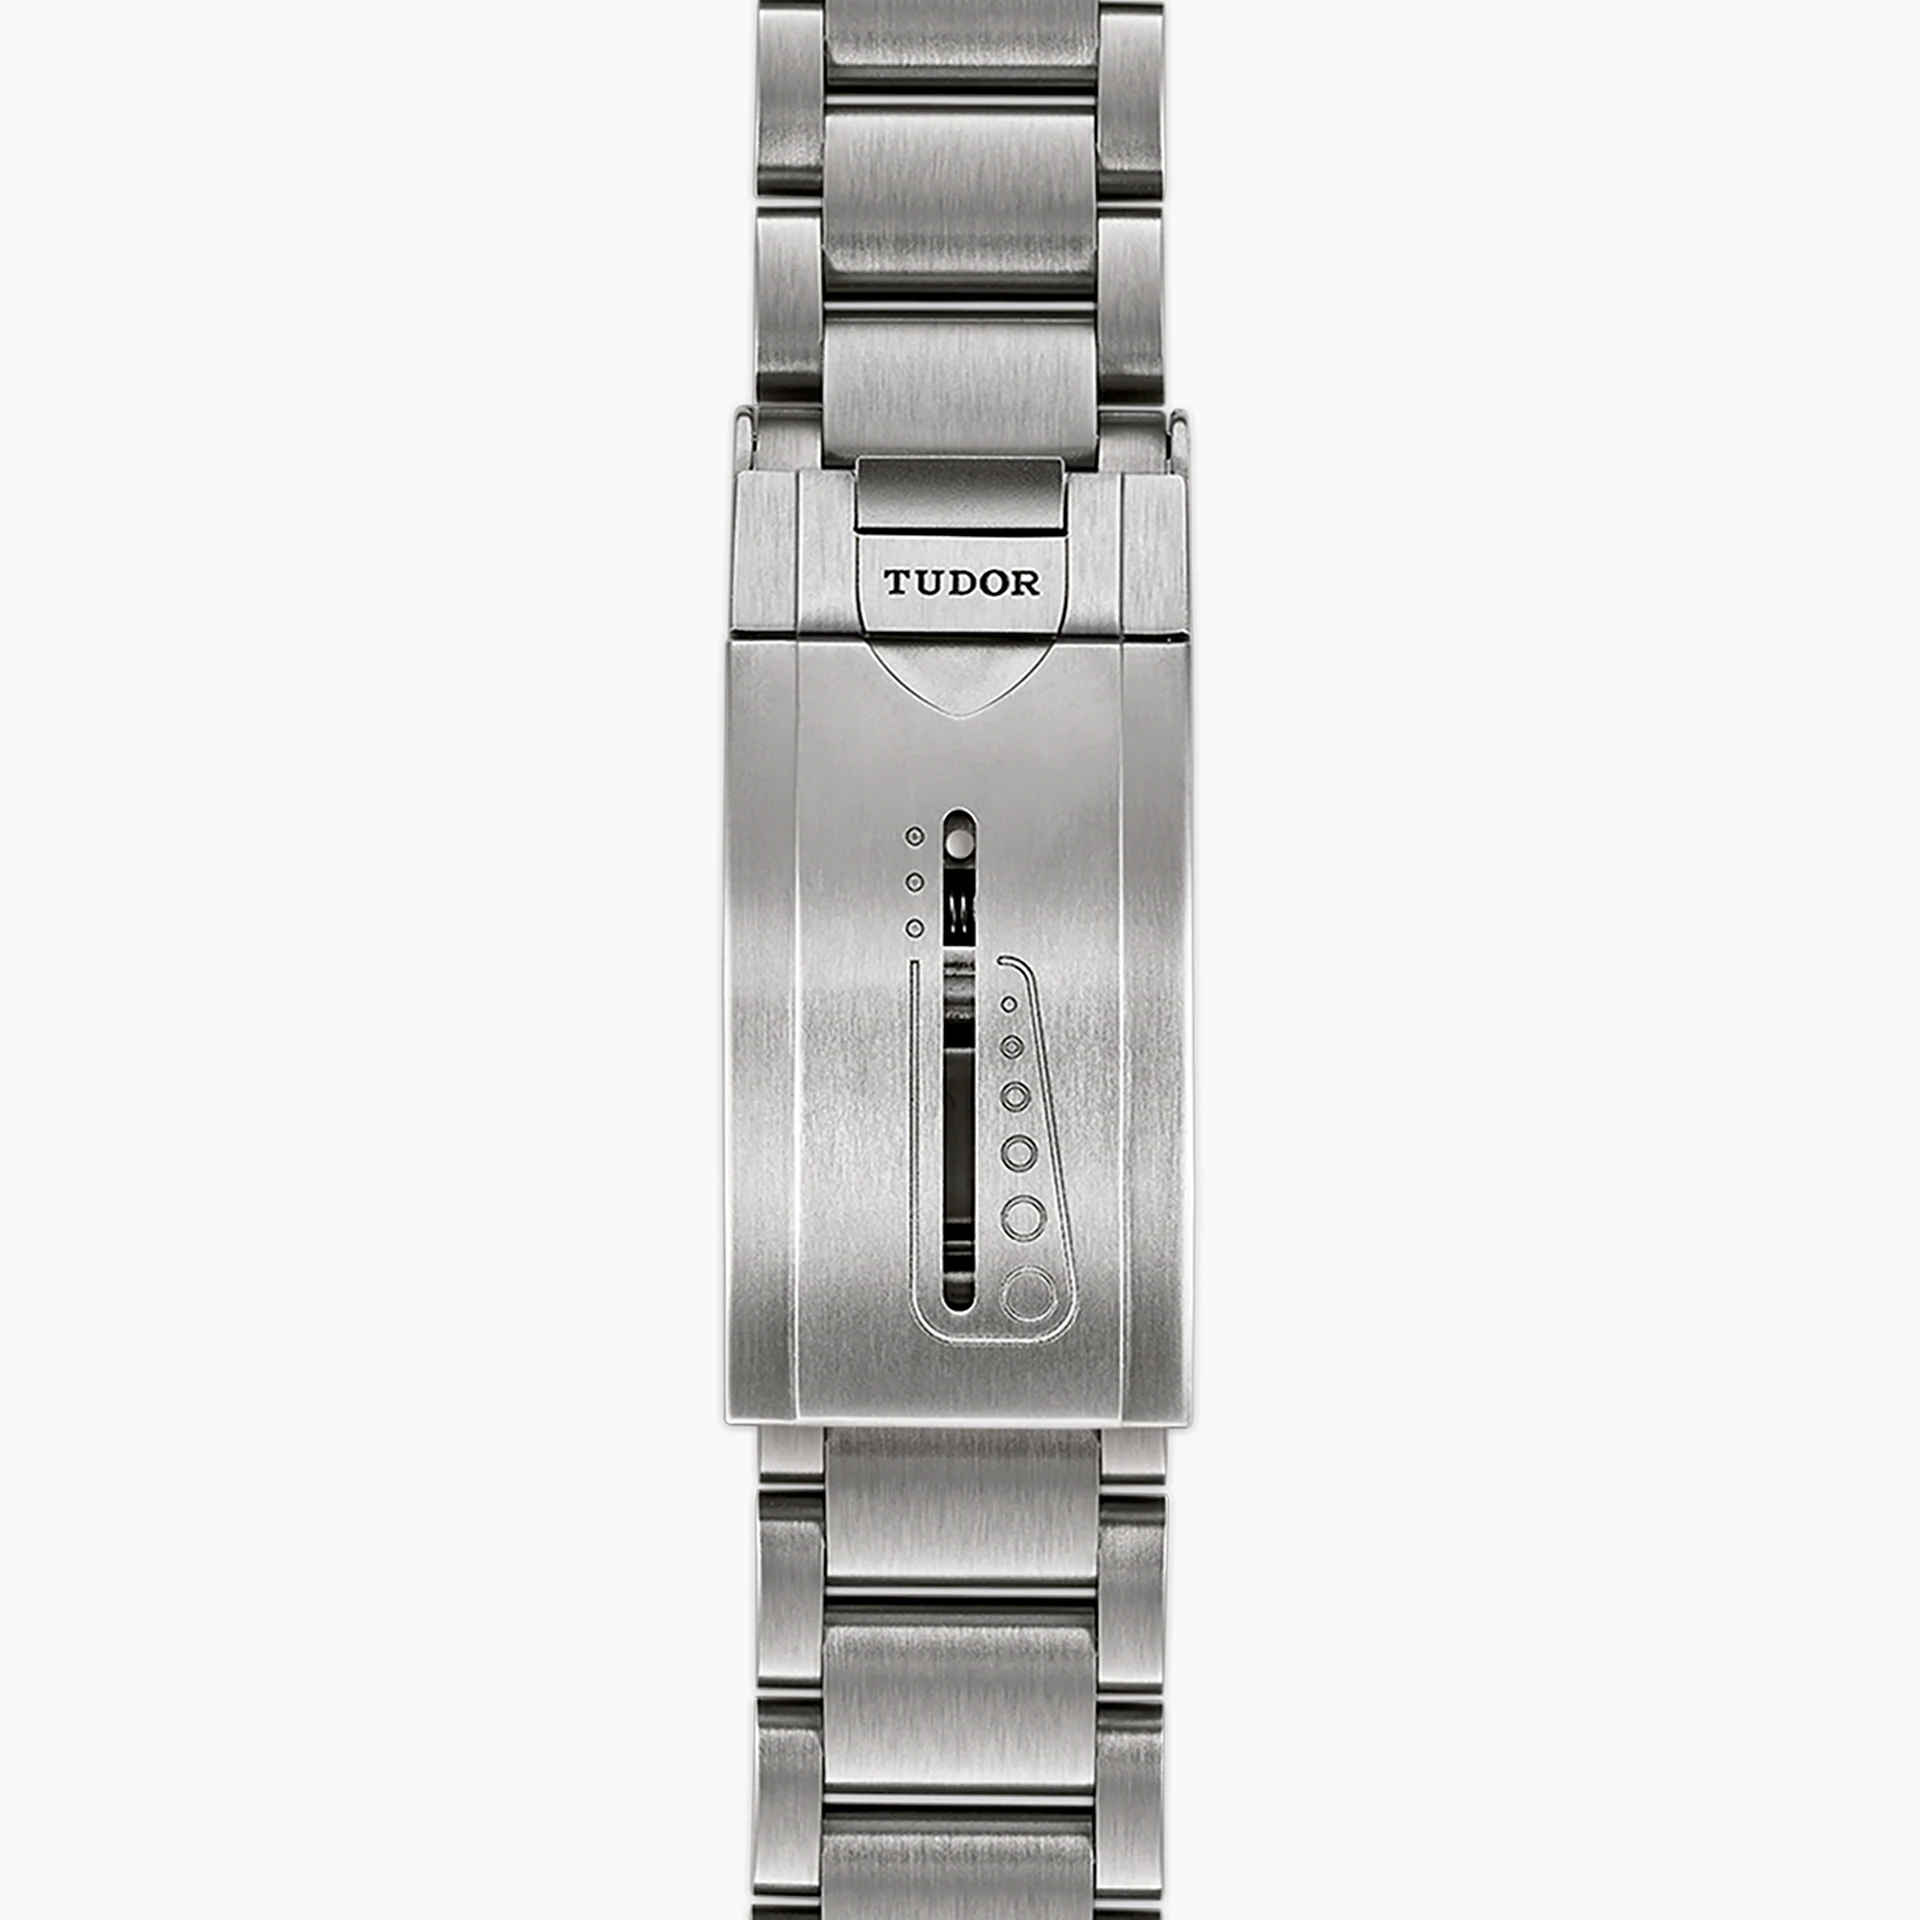 Tudor Pelagos, Titanium, 42mm, Ref# M25600TN-0001, Bracelet